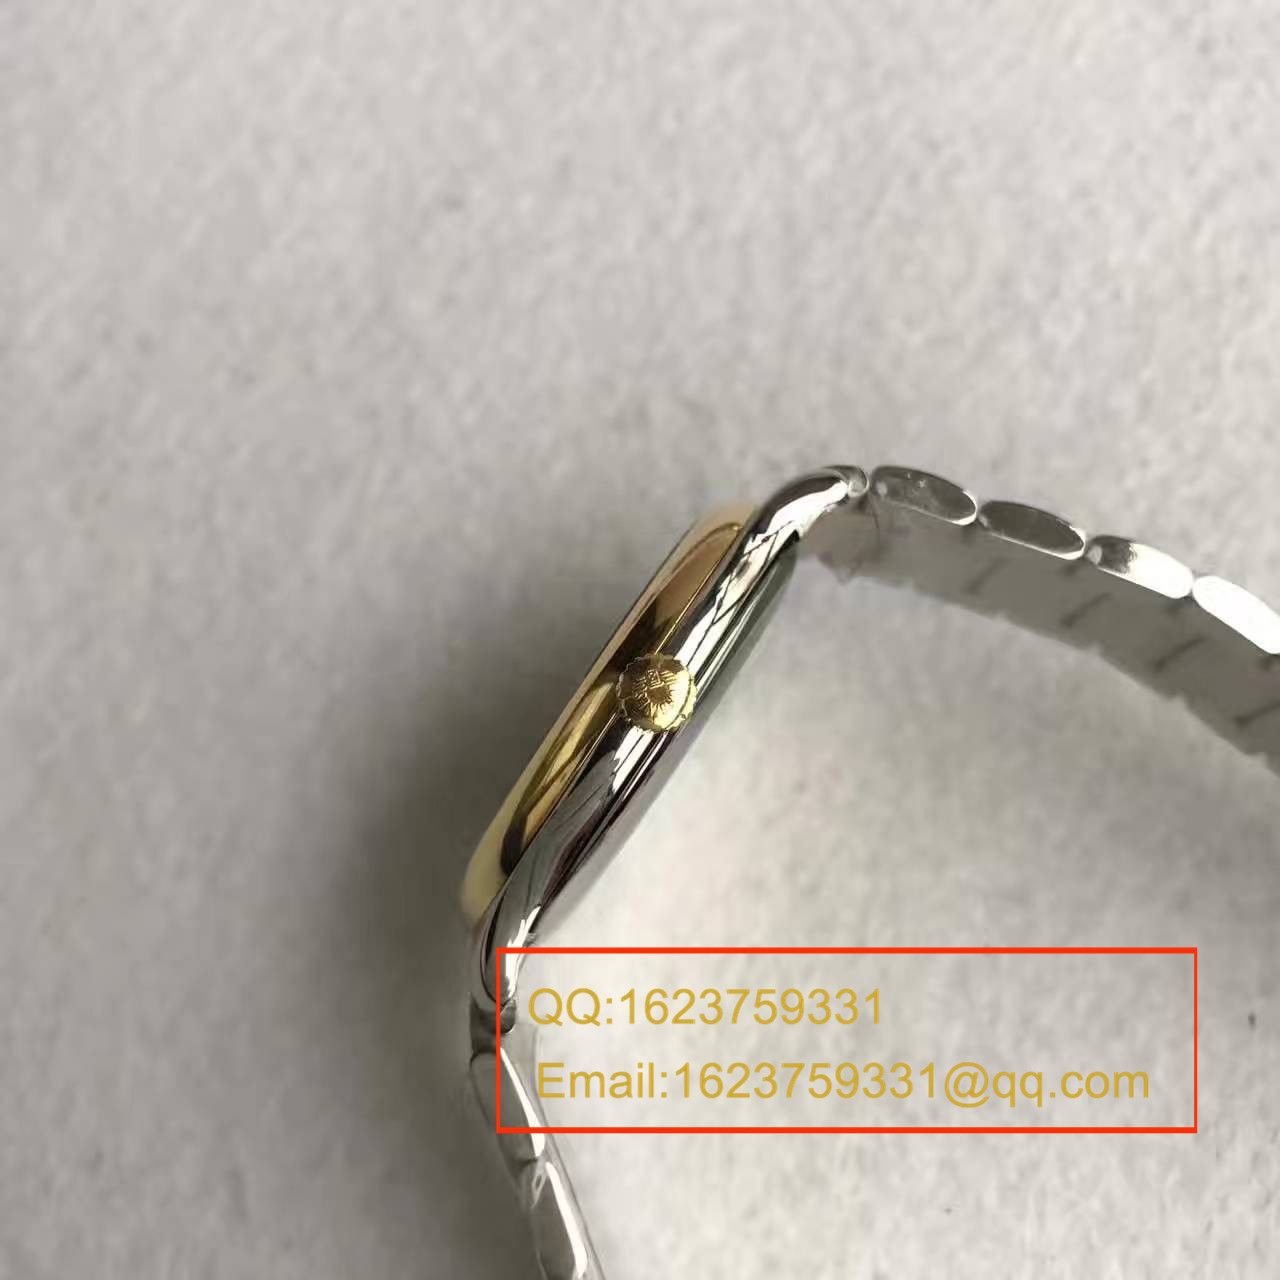 【MK厂一比一超A精仿手表】浪琴制表传统系列L2.628.5.77.7腕表 / L080